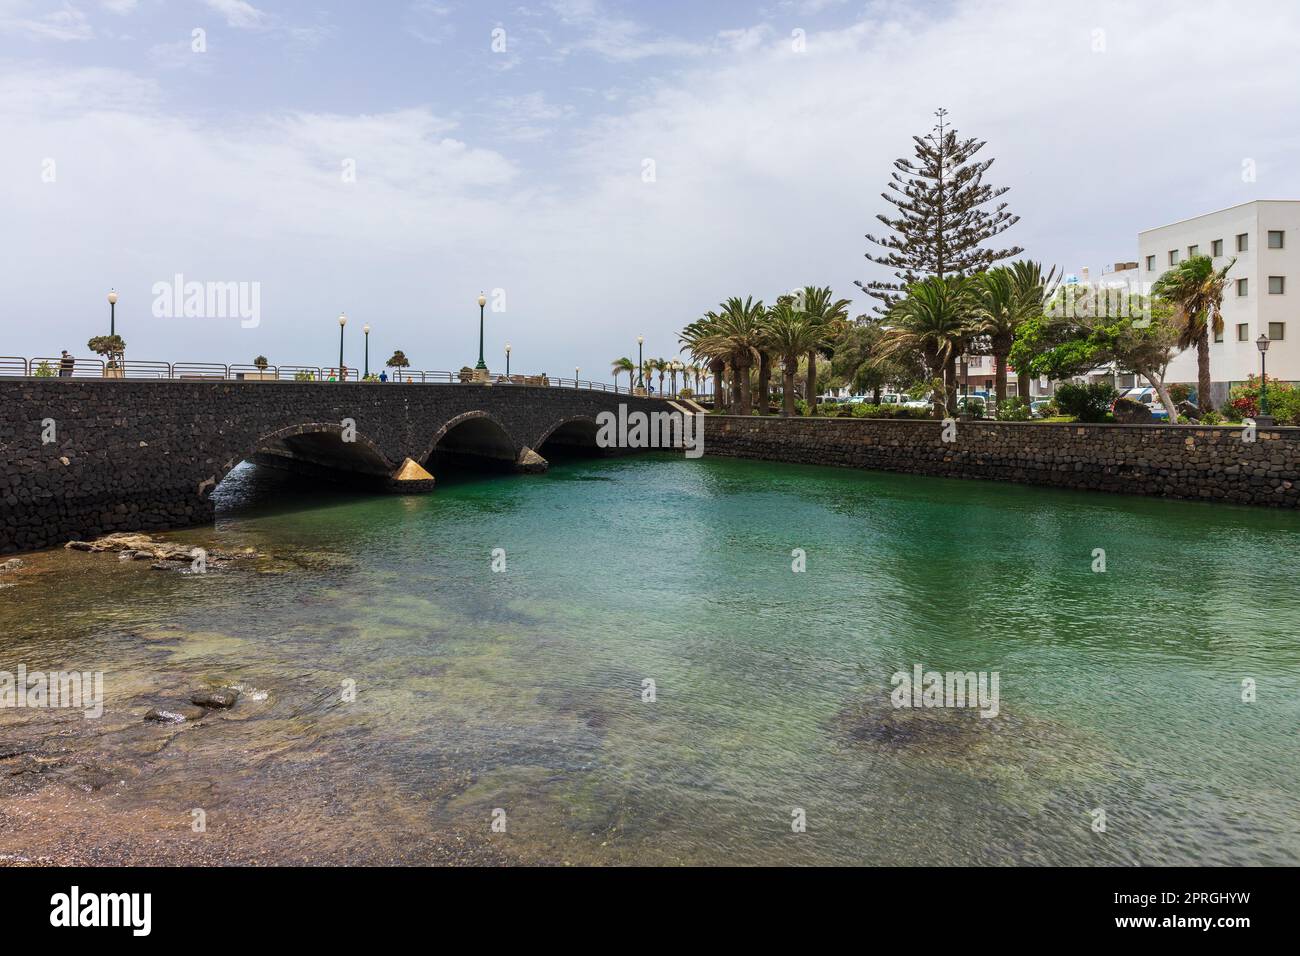 Blick auf die Bucht und das Wasser der Inselhauptstadt Arrecife, Lanzerote, Kanarische Inseln. Spanien. Stockfoto